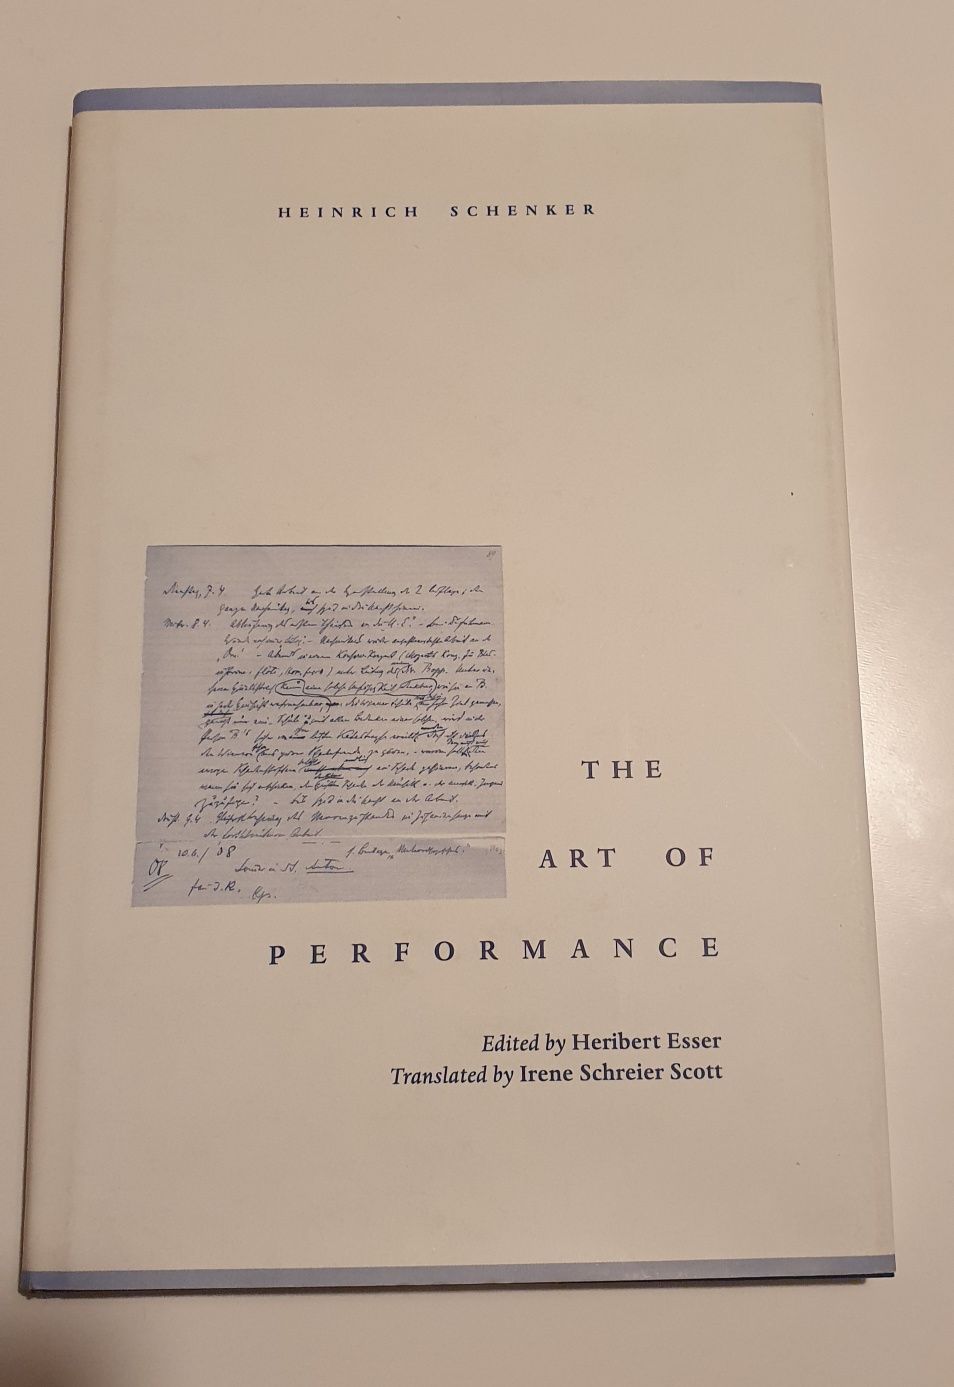 The art of performance Heinrich Schenker